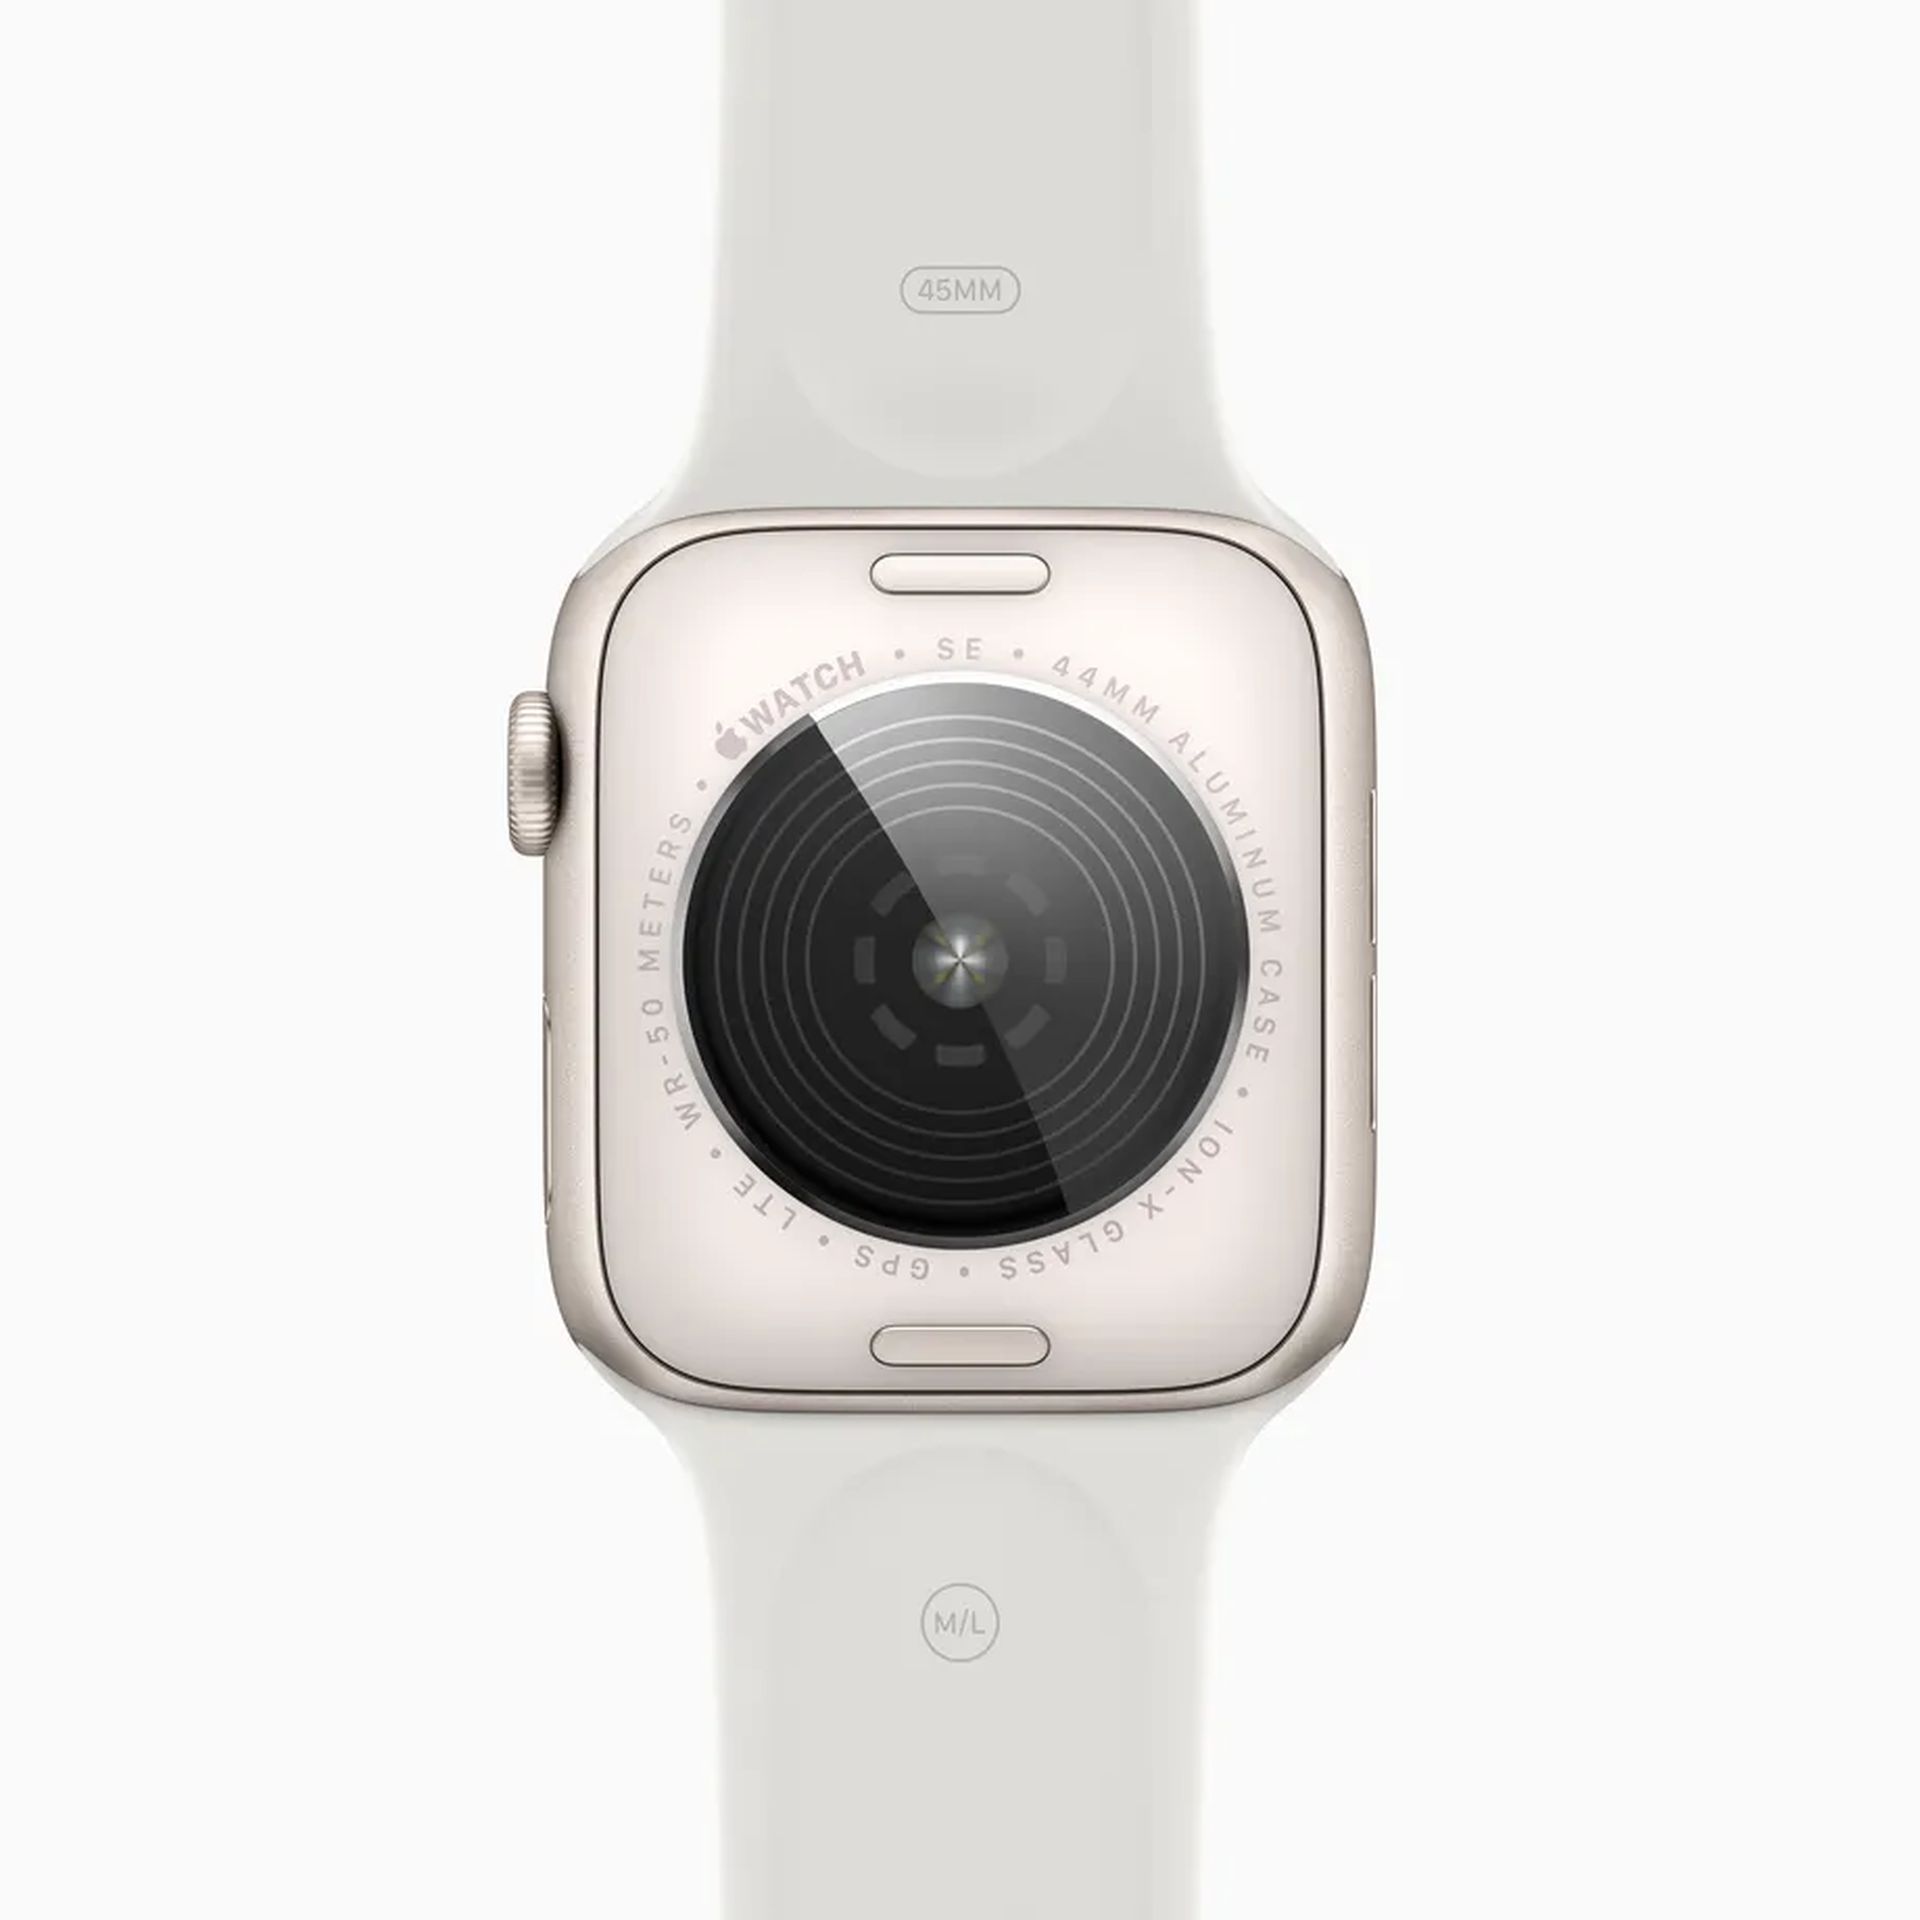 Apple Watch SE: Özellikleri, fiyatı ve çıkış tarihi